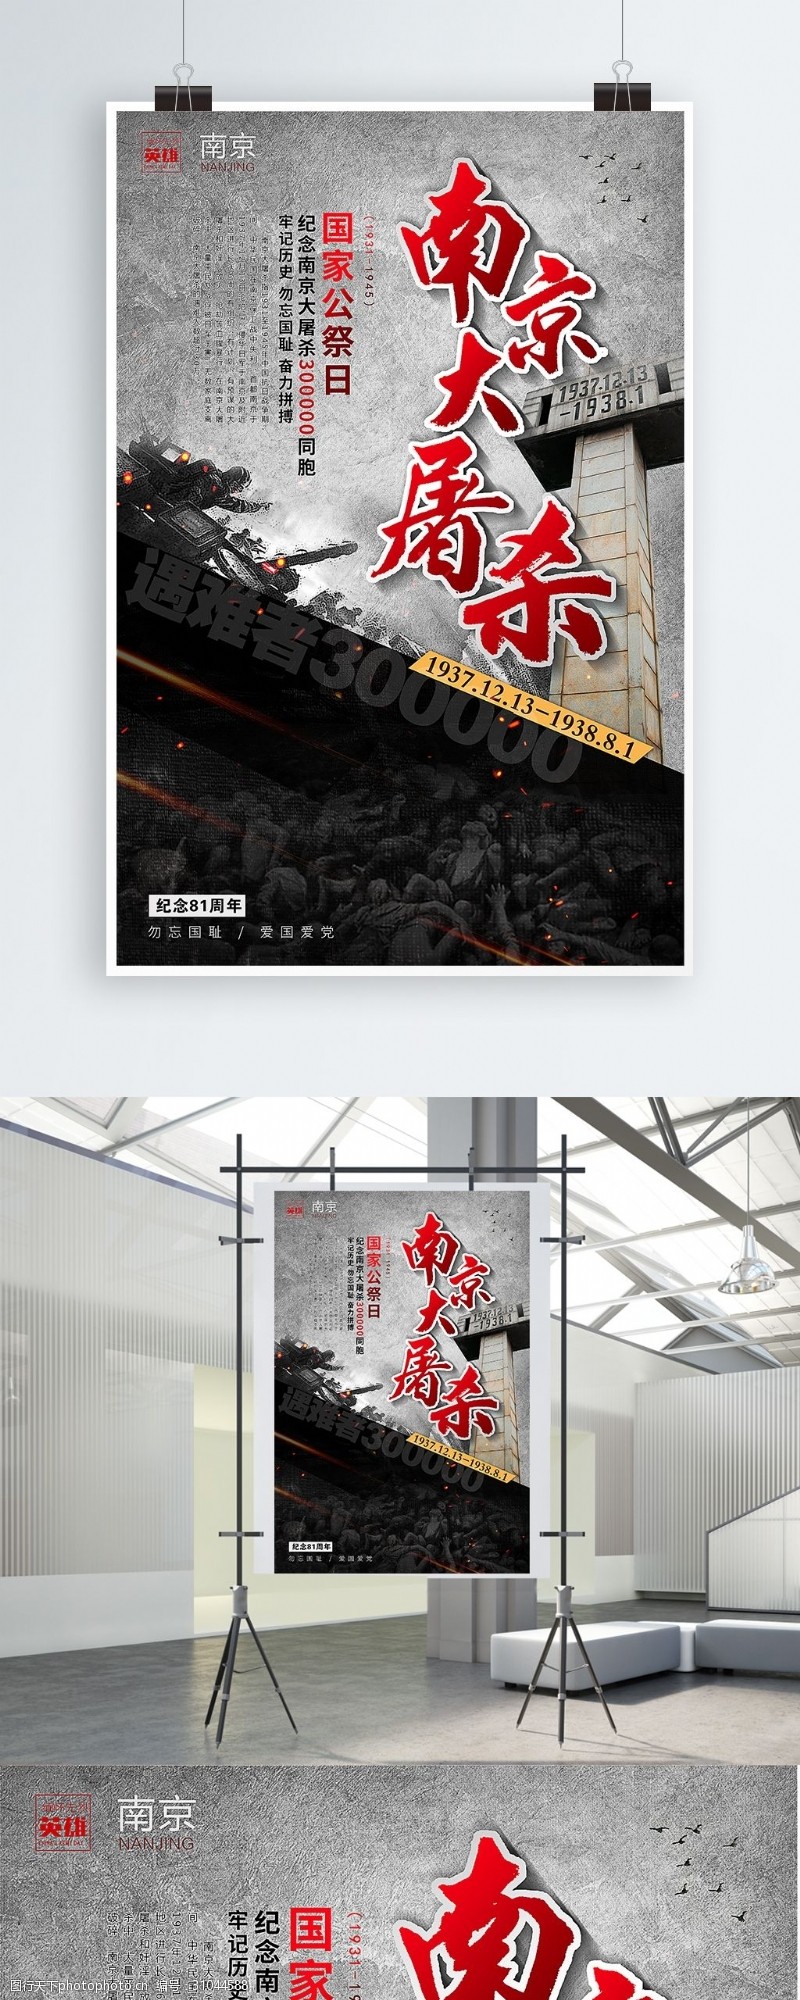 纪念日南京大屠杀国家公祭日宣传海报